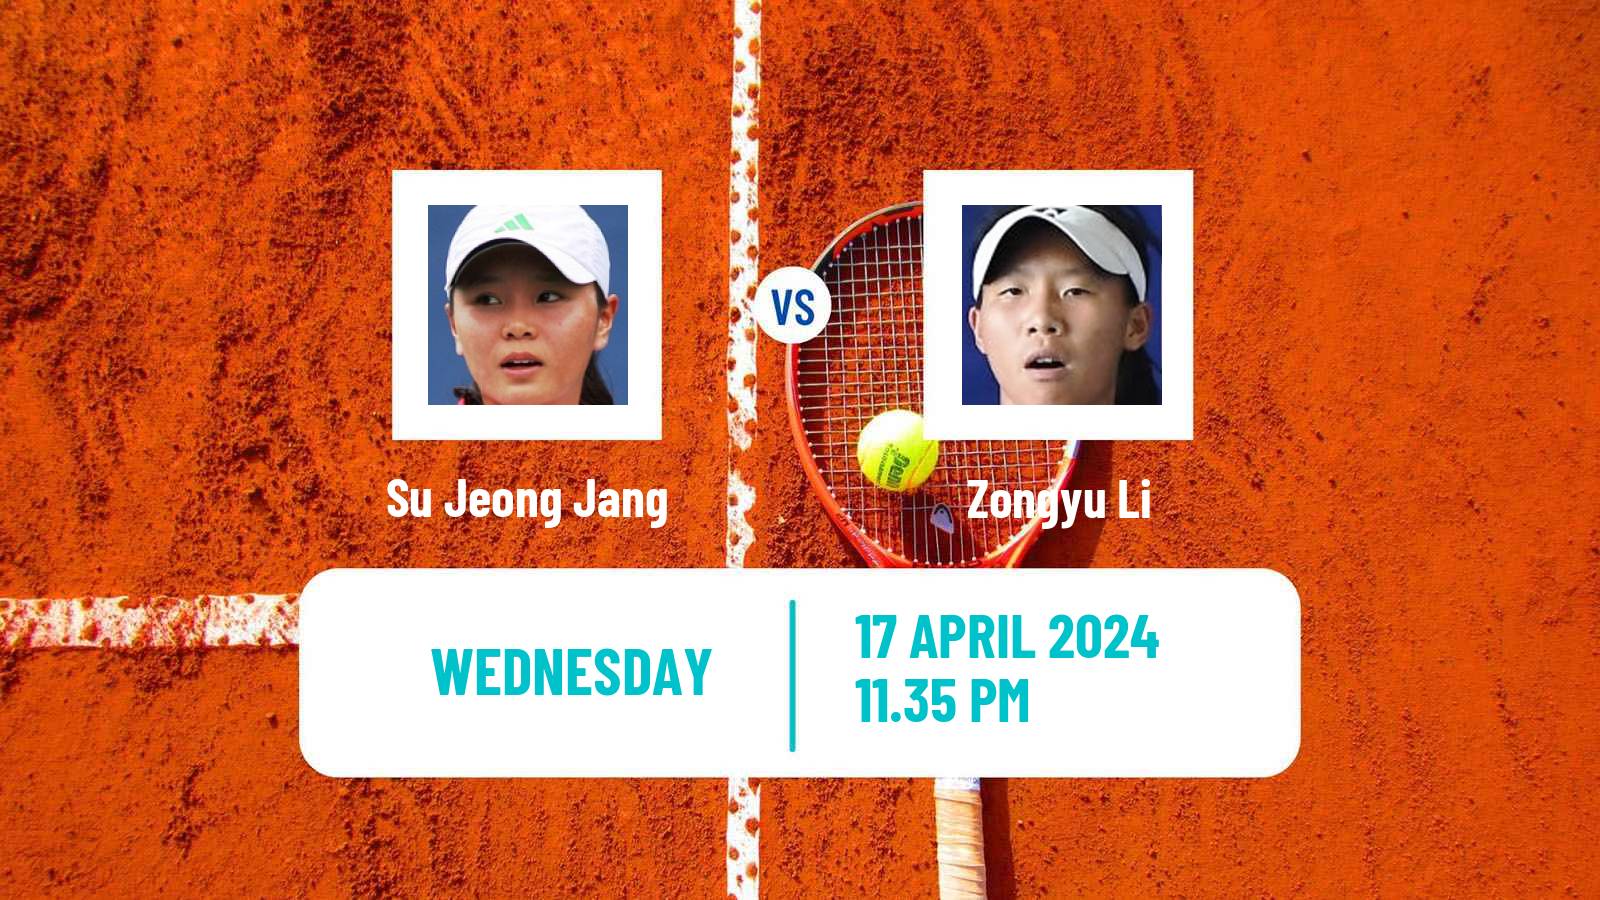 Tennis ITF W50 Shenzhen 2 Women Su Jeong Jang - Zongyu Li